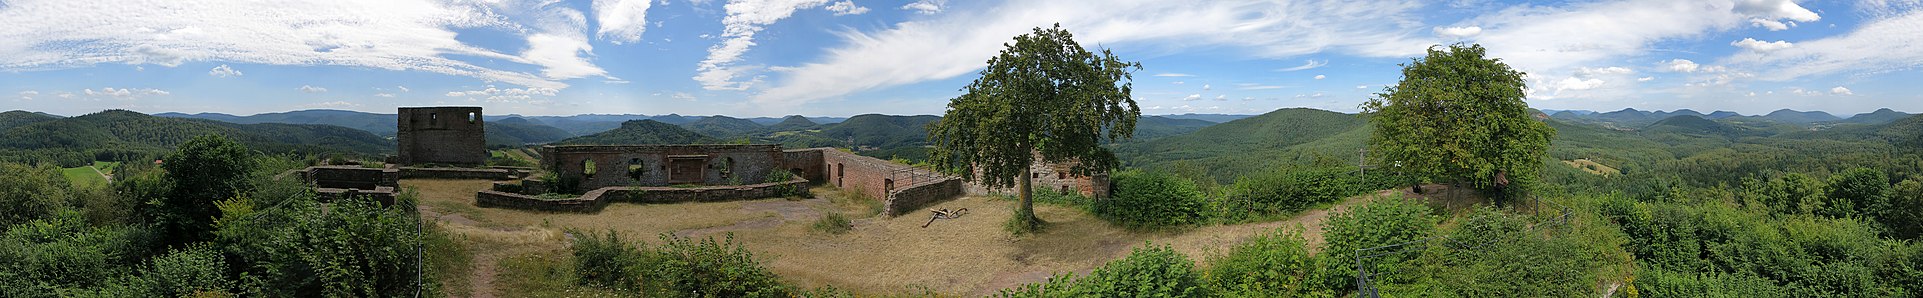 Panoramaaufnahme der Ruine und der Umgebung